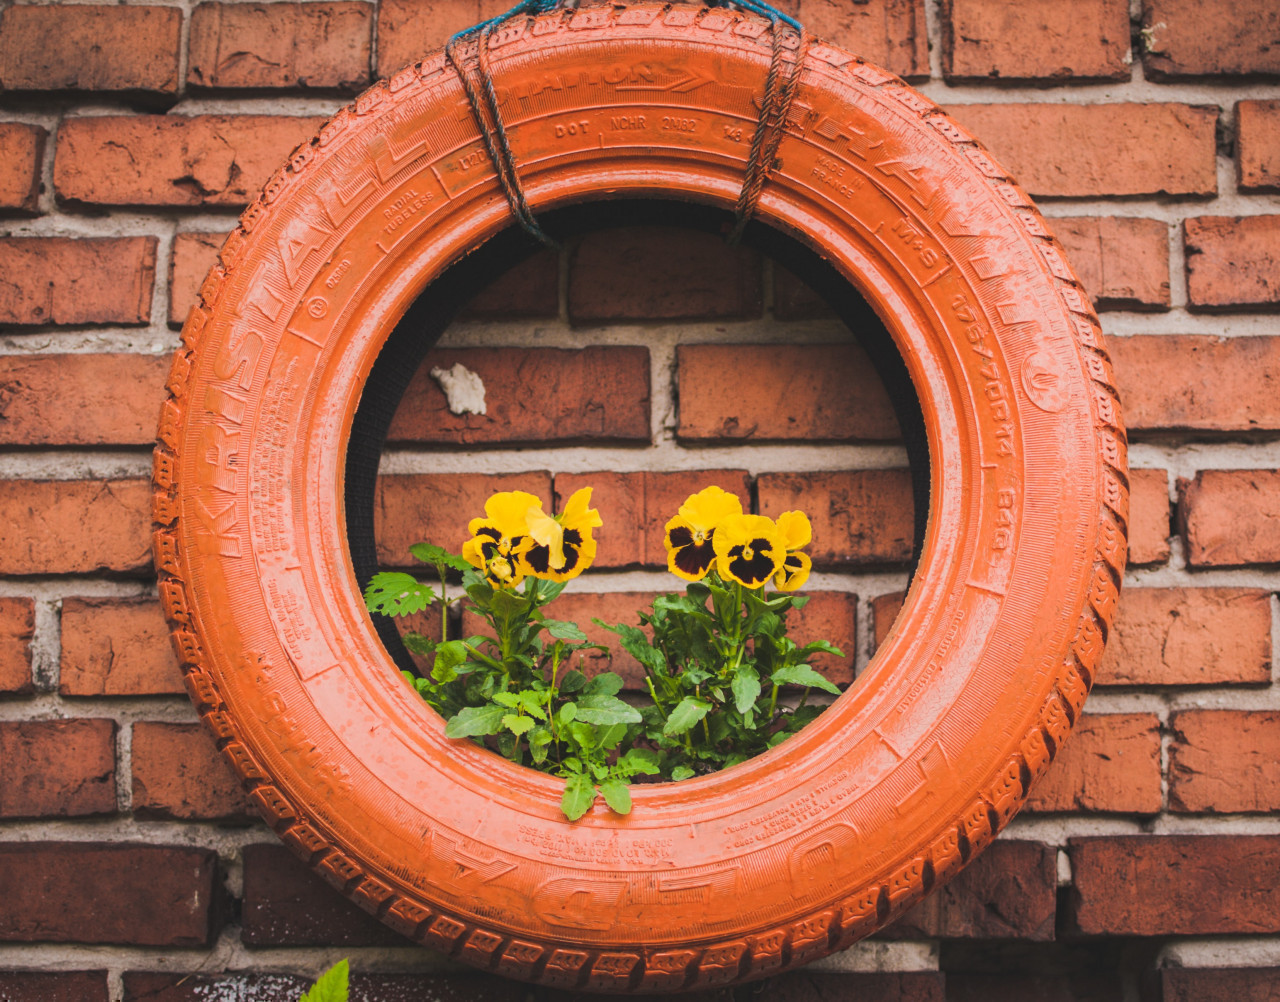 *jardinière*  pneu recyclé en jardinière, peint en orange avec des fleurs jaunes à l'interieur